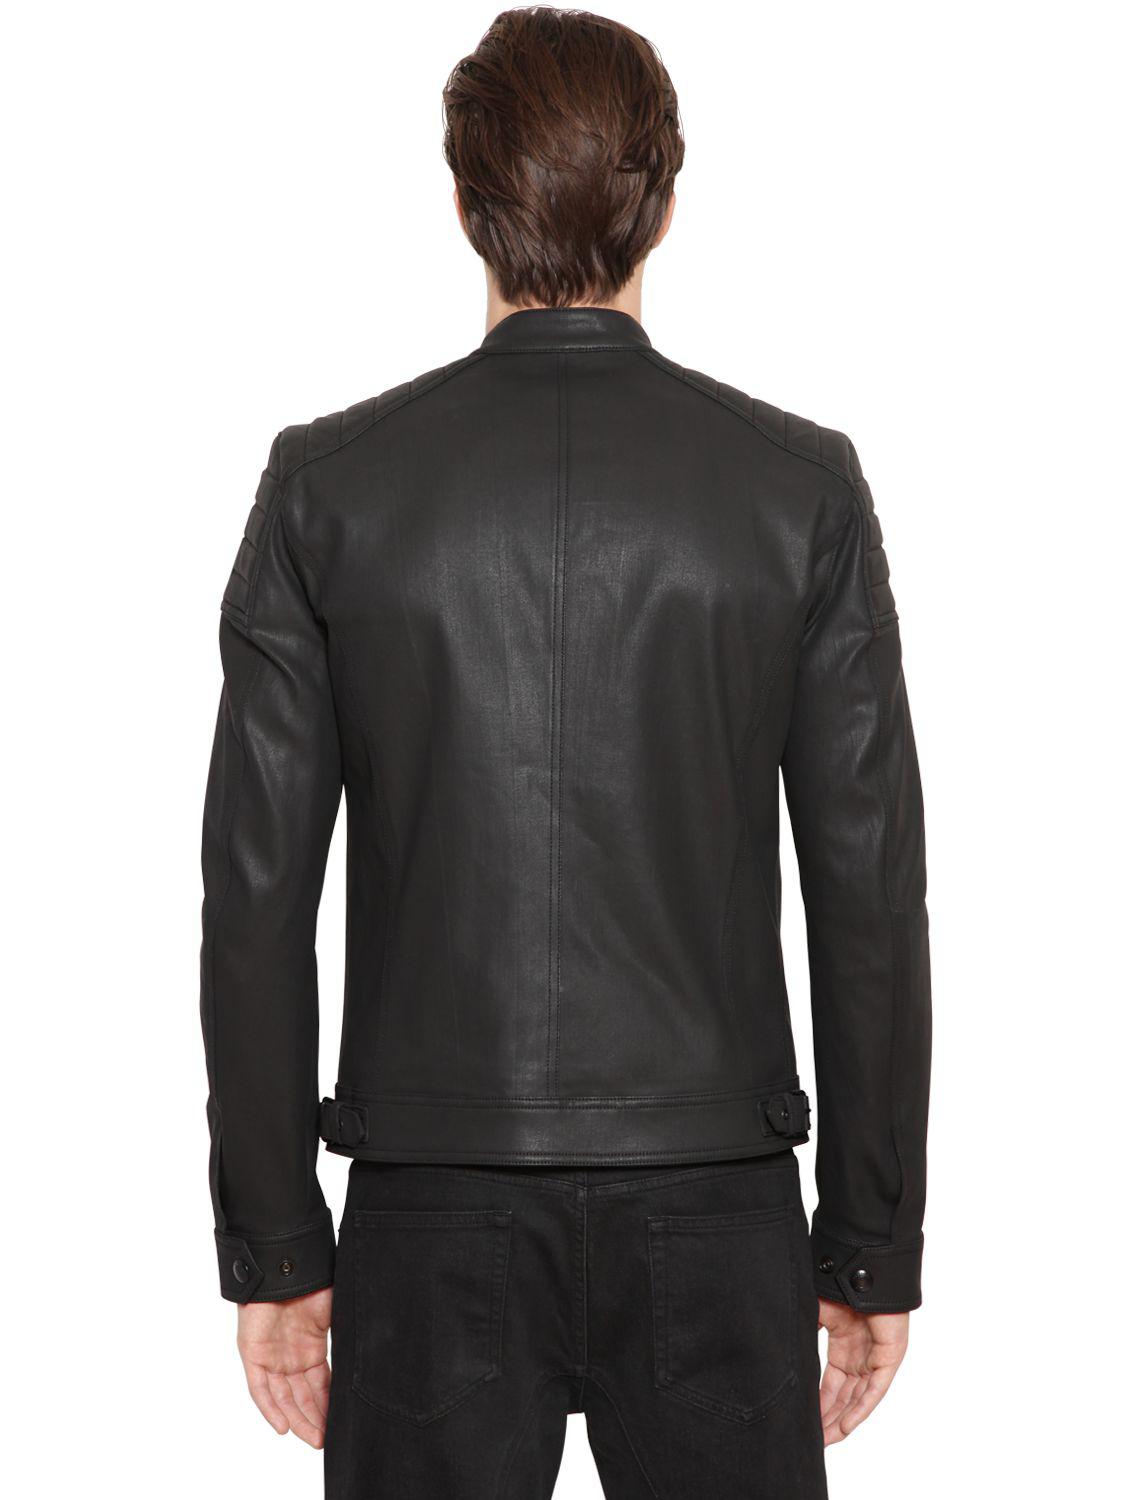 Belstaff Weybridge Waxed Cotton Jacket in Black for Men - Lyst